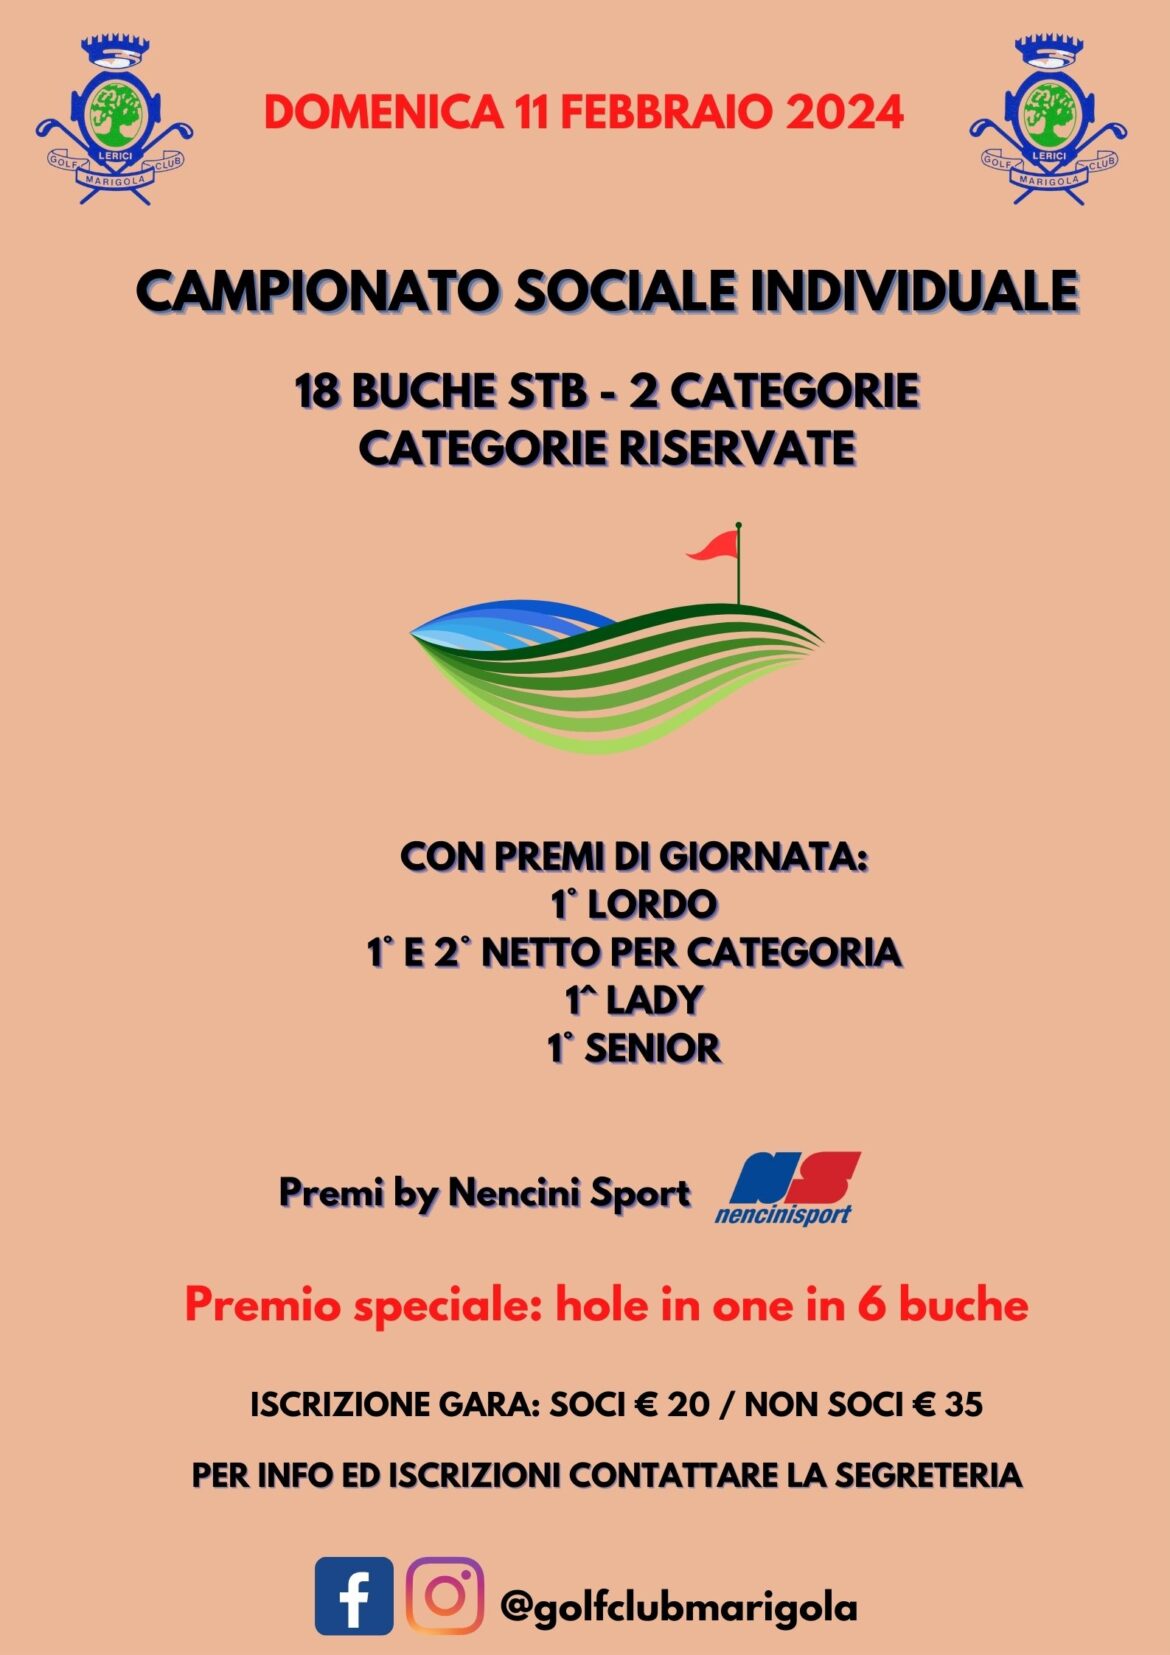 GARA ANNULLATA – CAMPIONATO SOCIALE INDIVIDUALE – domenica 11 febbraio 2024